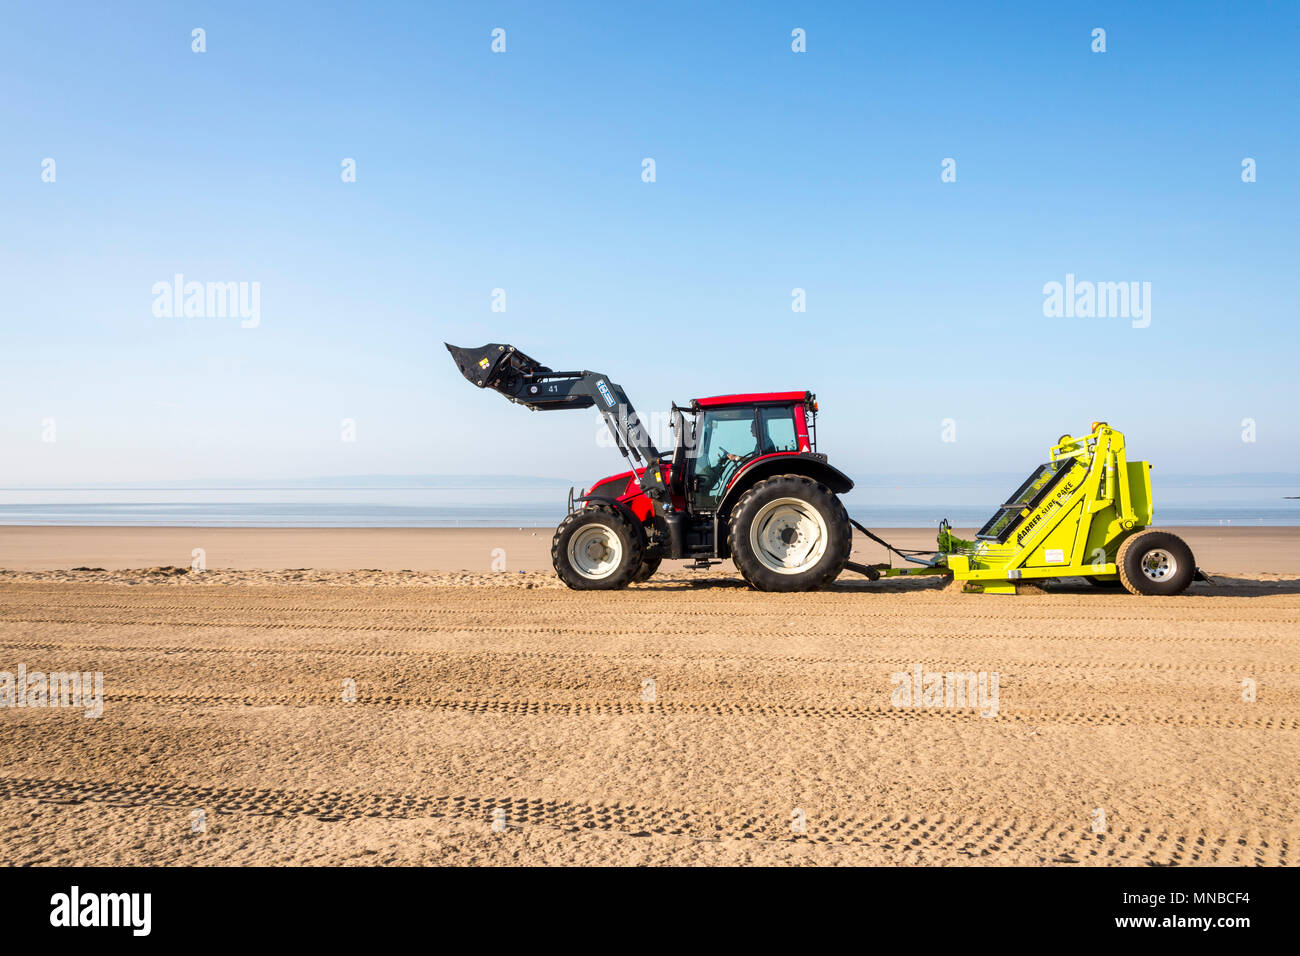 Whitmore Bay Beach bei Barry Island, Wales, früh an einem hellen, sonnigen Sommermorgen der Wurf durch einen roten Traktor ziehen einer Friseur Surfen Rechen gesäubert werden. Stockfoto